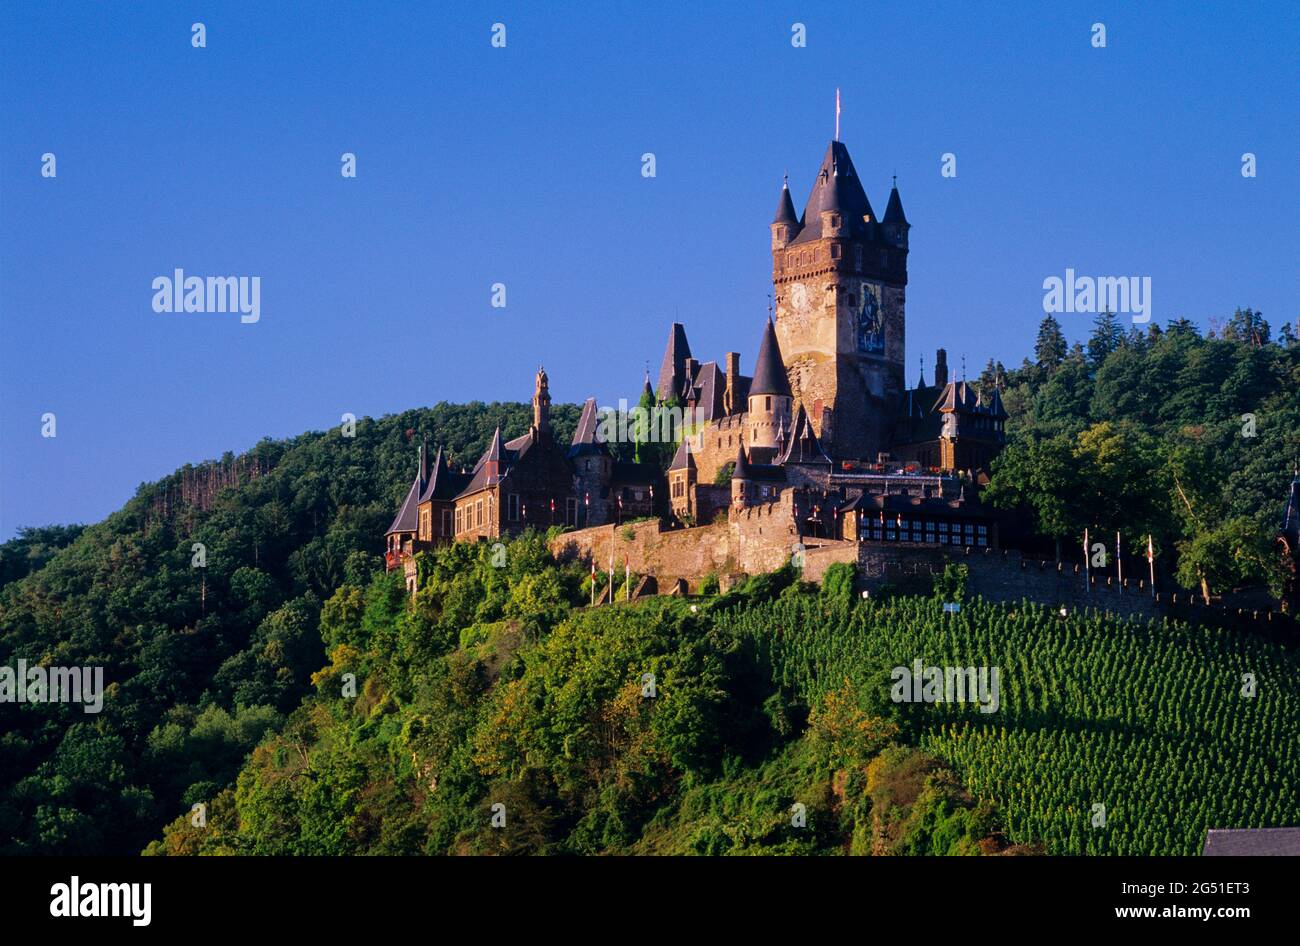 Château de Cochem sur la colline, Chochem, Rhénanie-Palatinat, Allemagne Banque D'Images